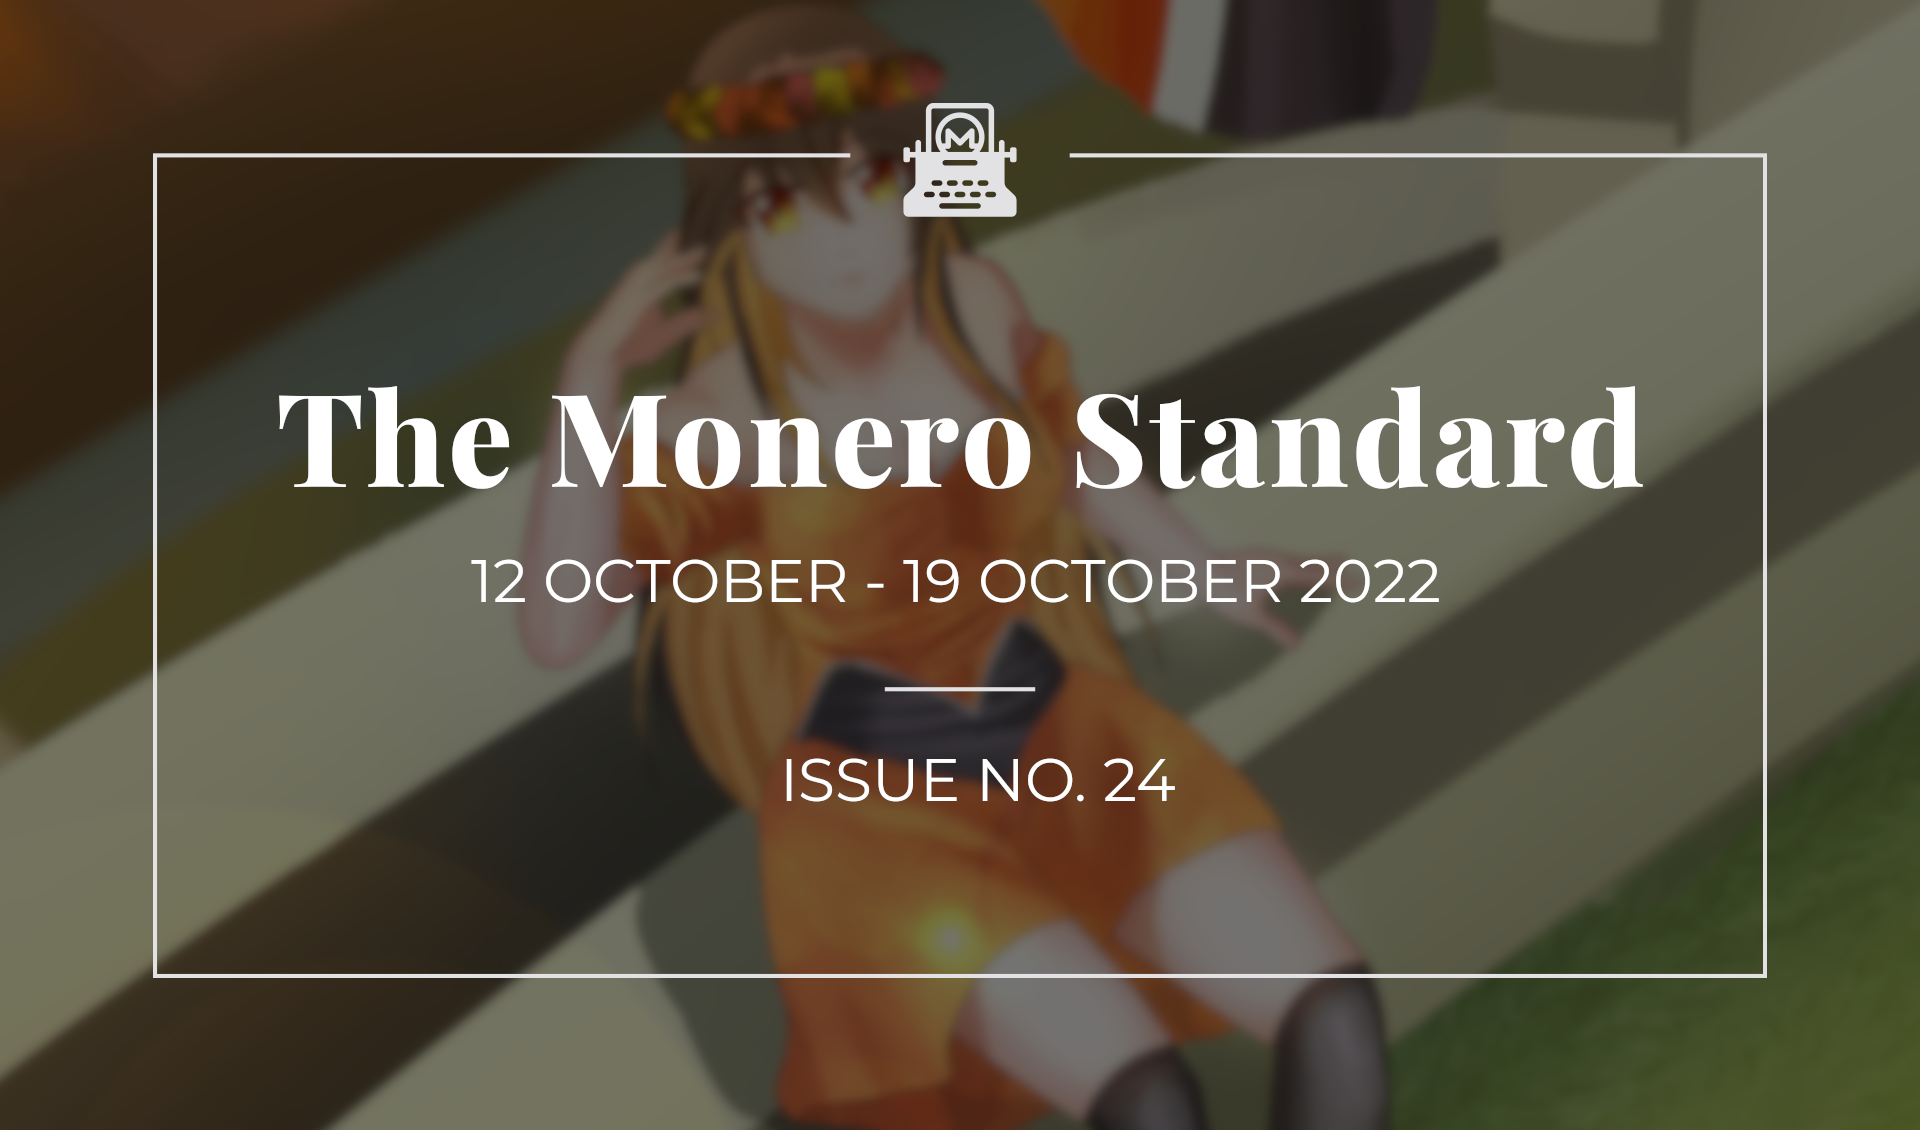 The Monero Standard #24: 12 October 2022 - 19 October 2022